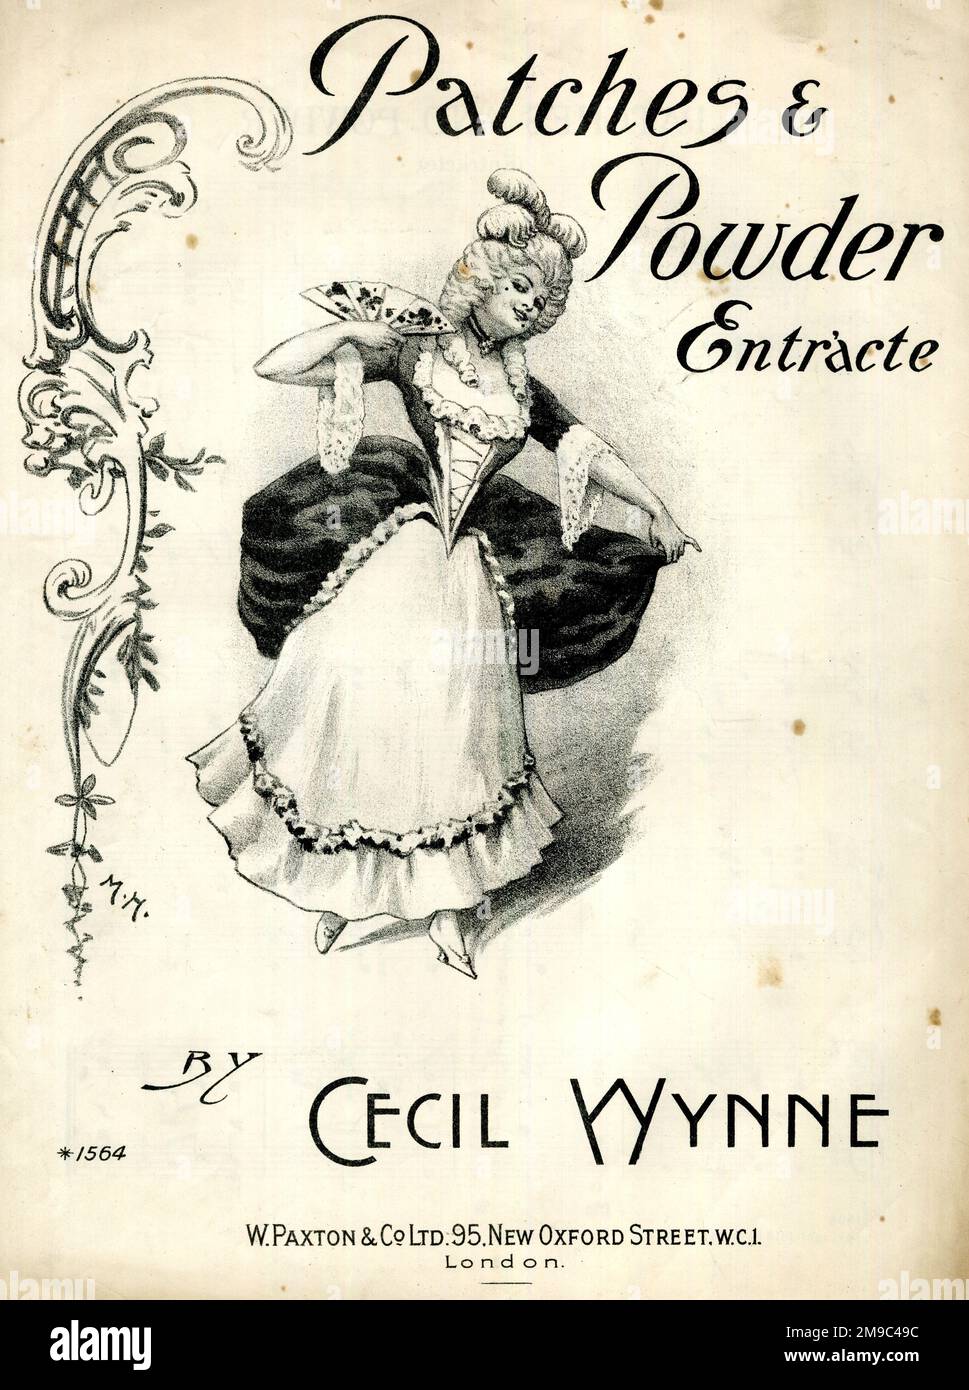 Music Cover, patches & Powder Entracte de Cecil Wynne Banque D'Images